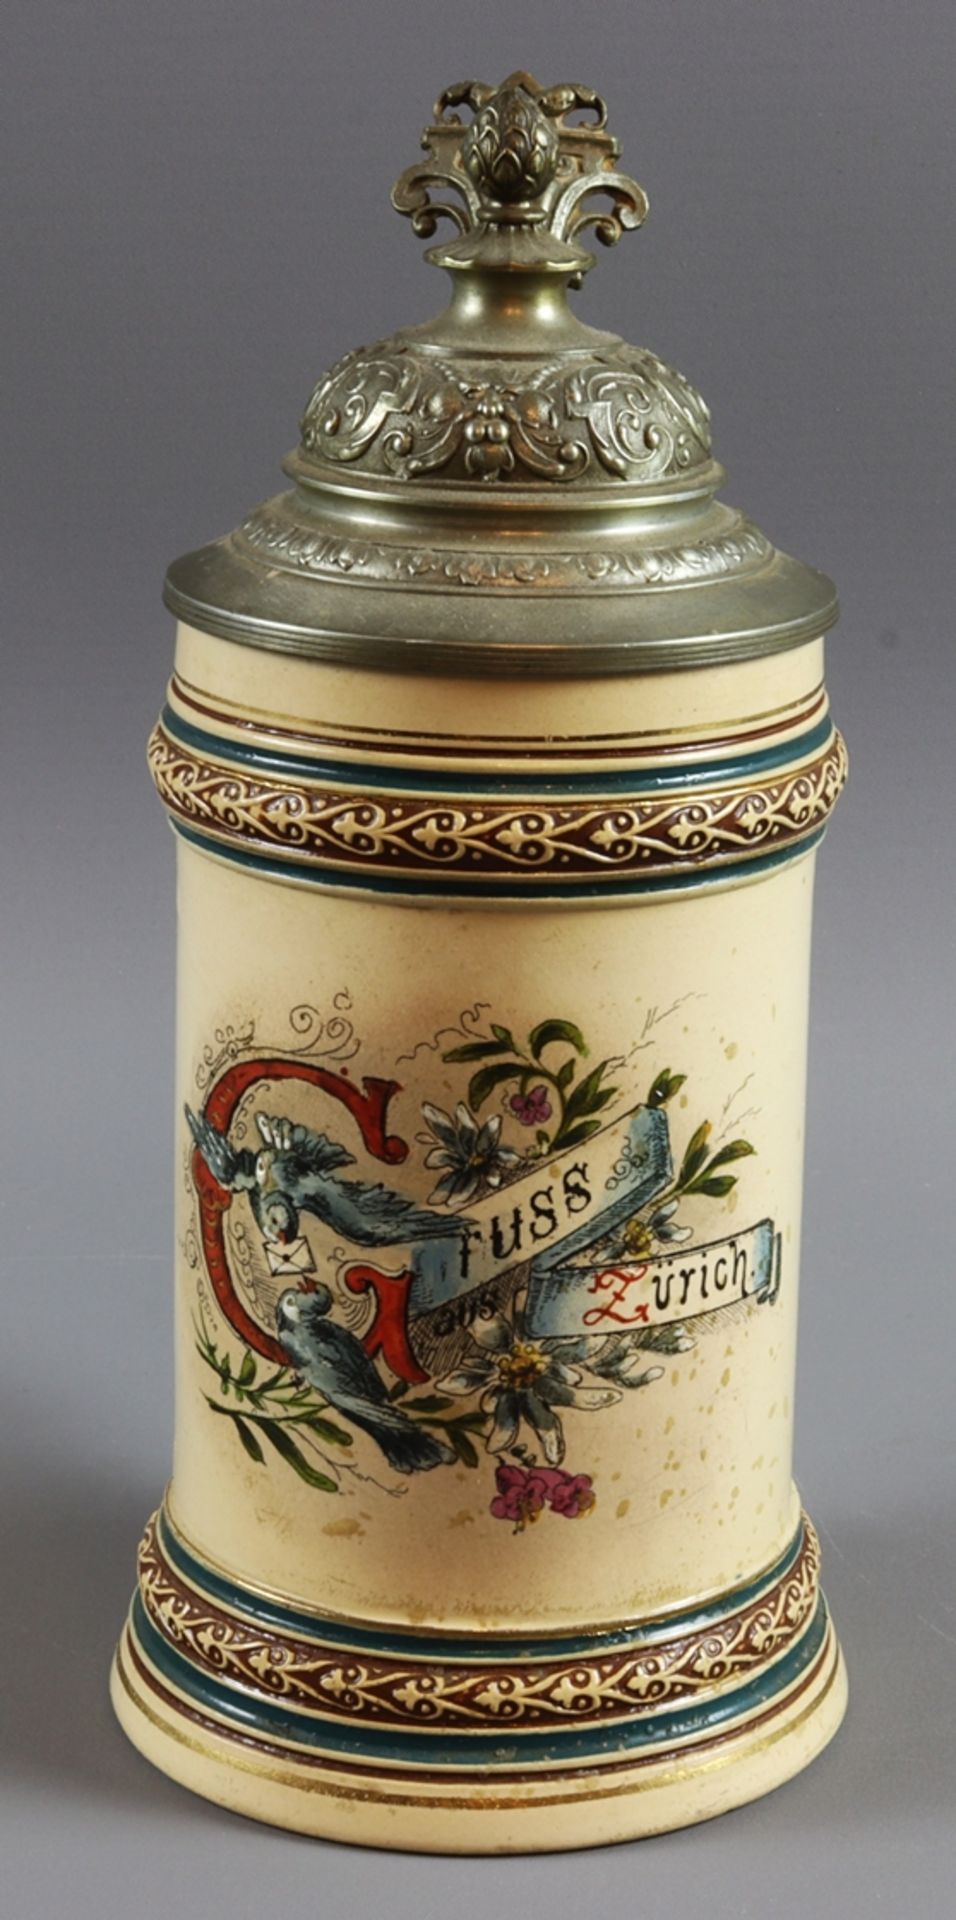 Memorial jug of the city of Zurich, Historicism 1880 - 1900, Switzerland